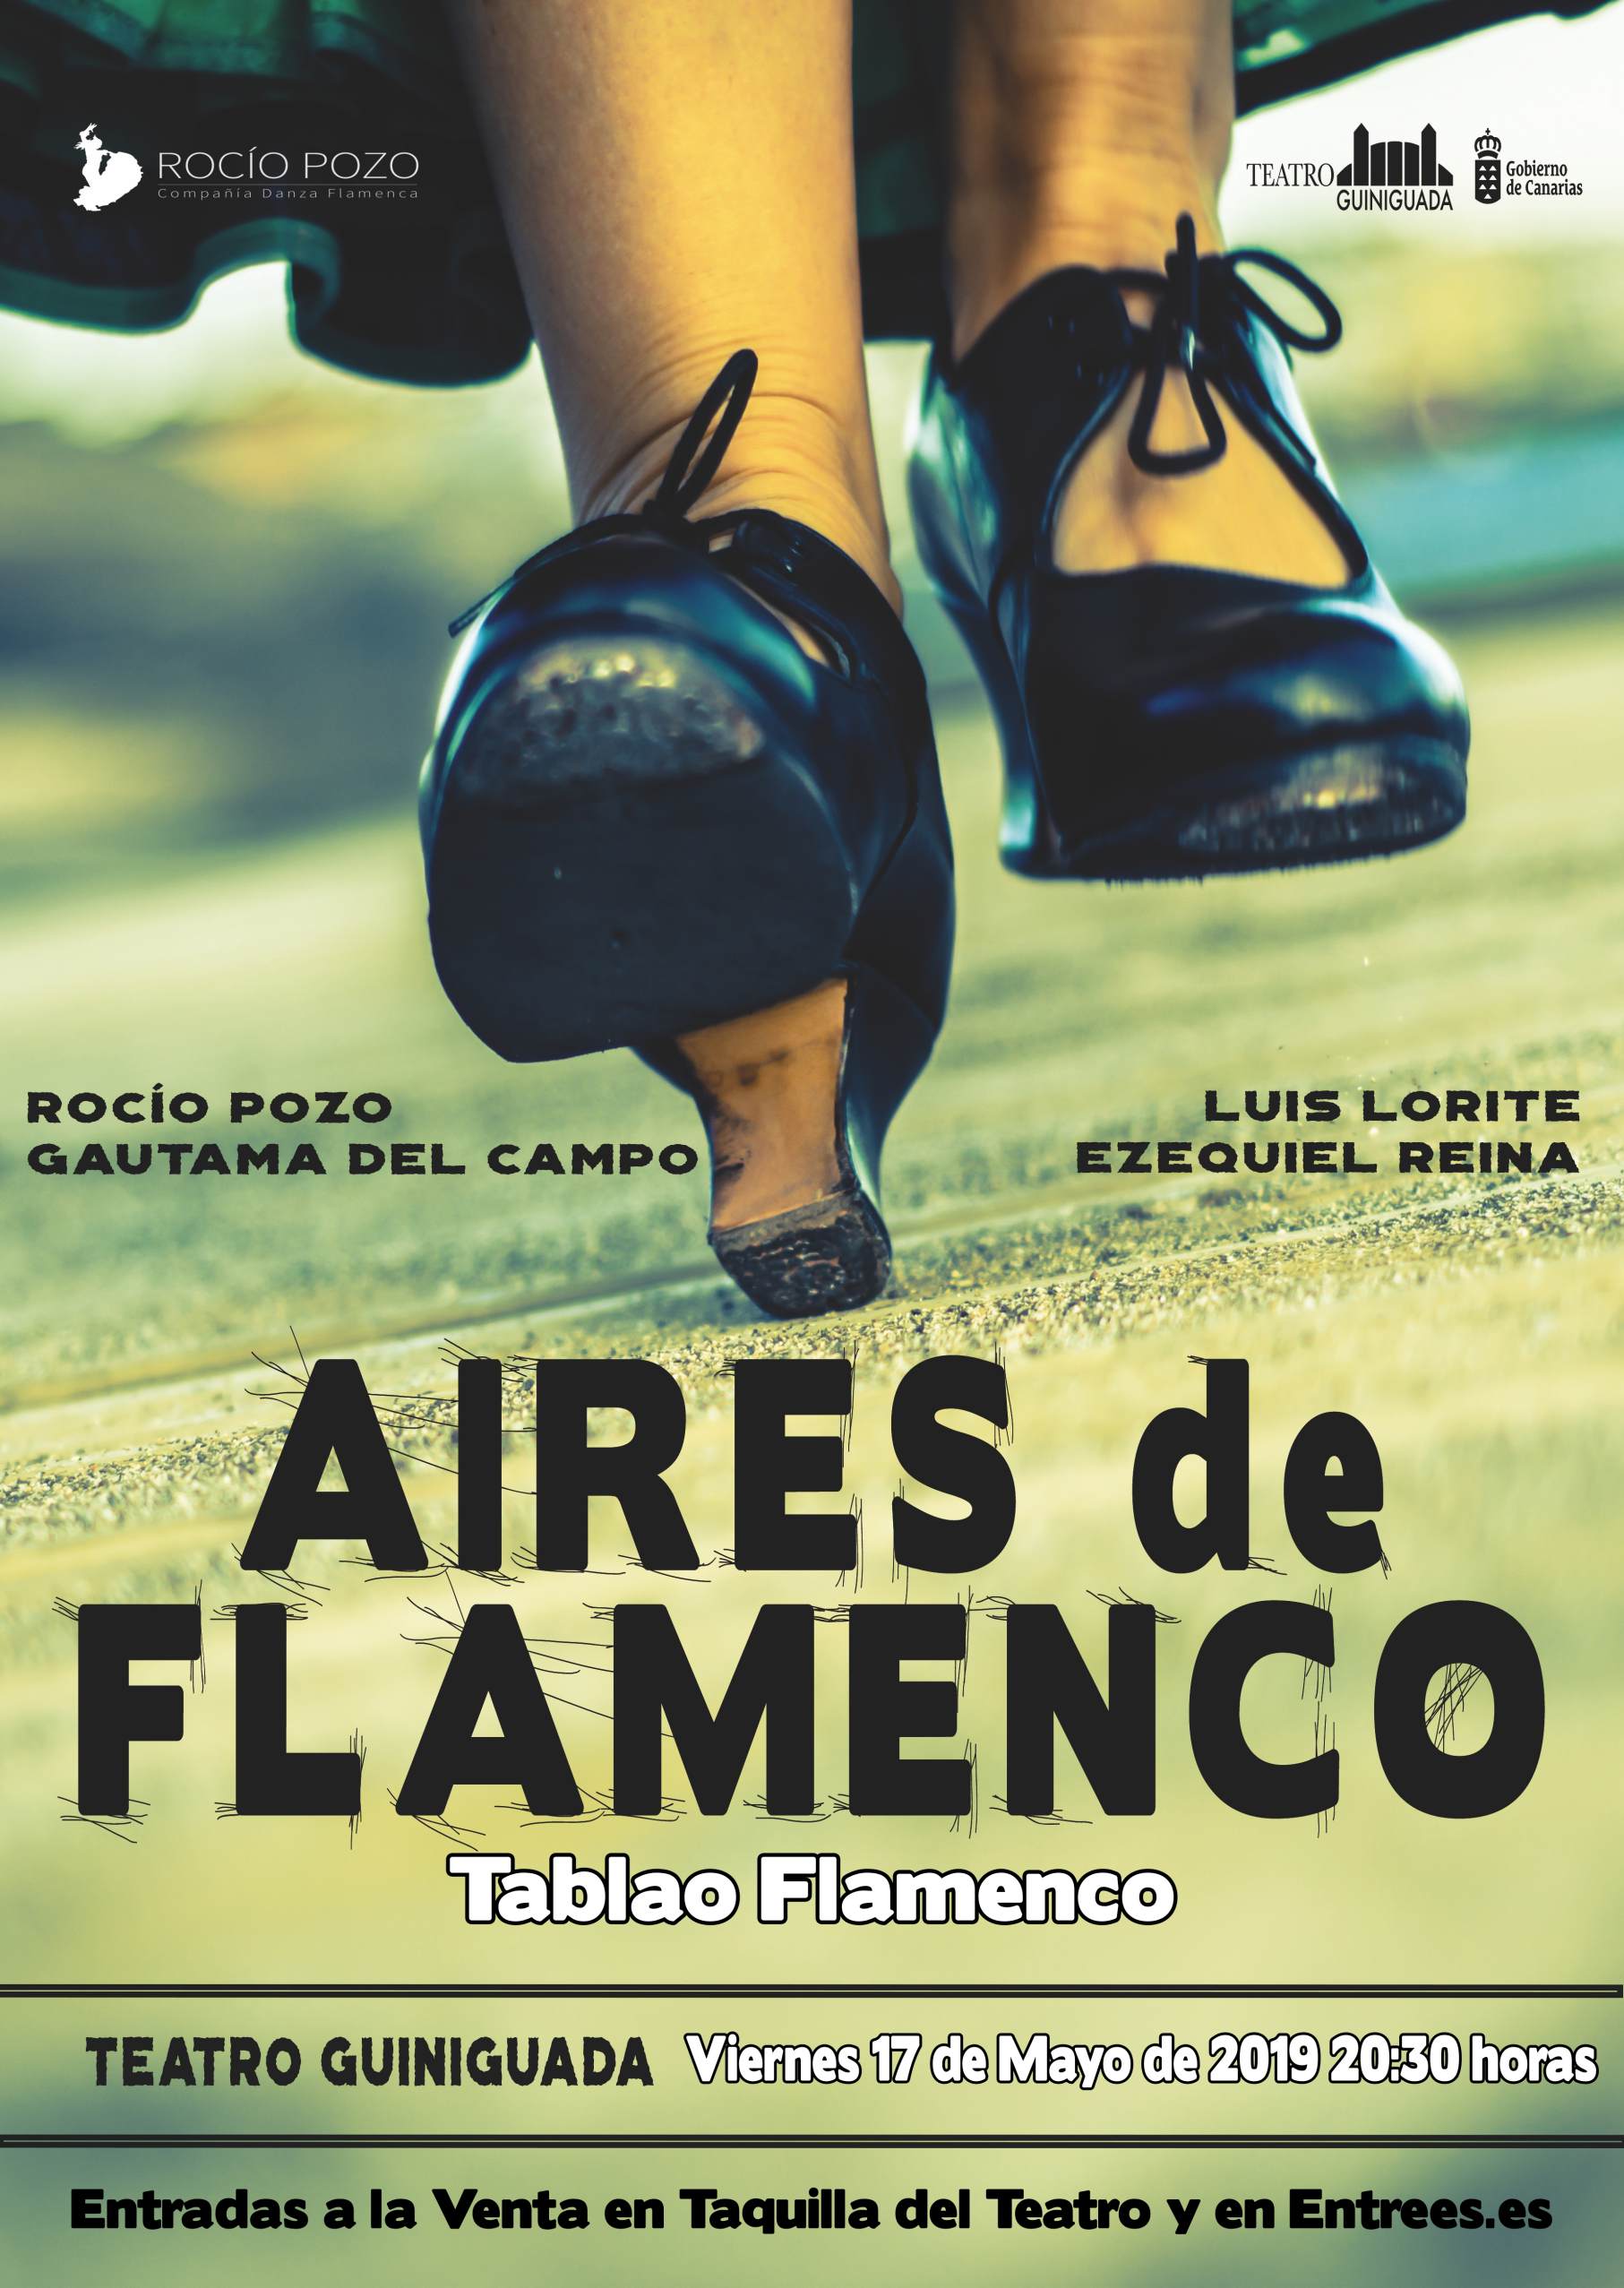 Aires de Flamenco, tablao flamenco en el Teatro Guiniguada el próximo 17 de Mayo a las 20:30 horas